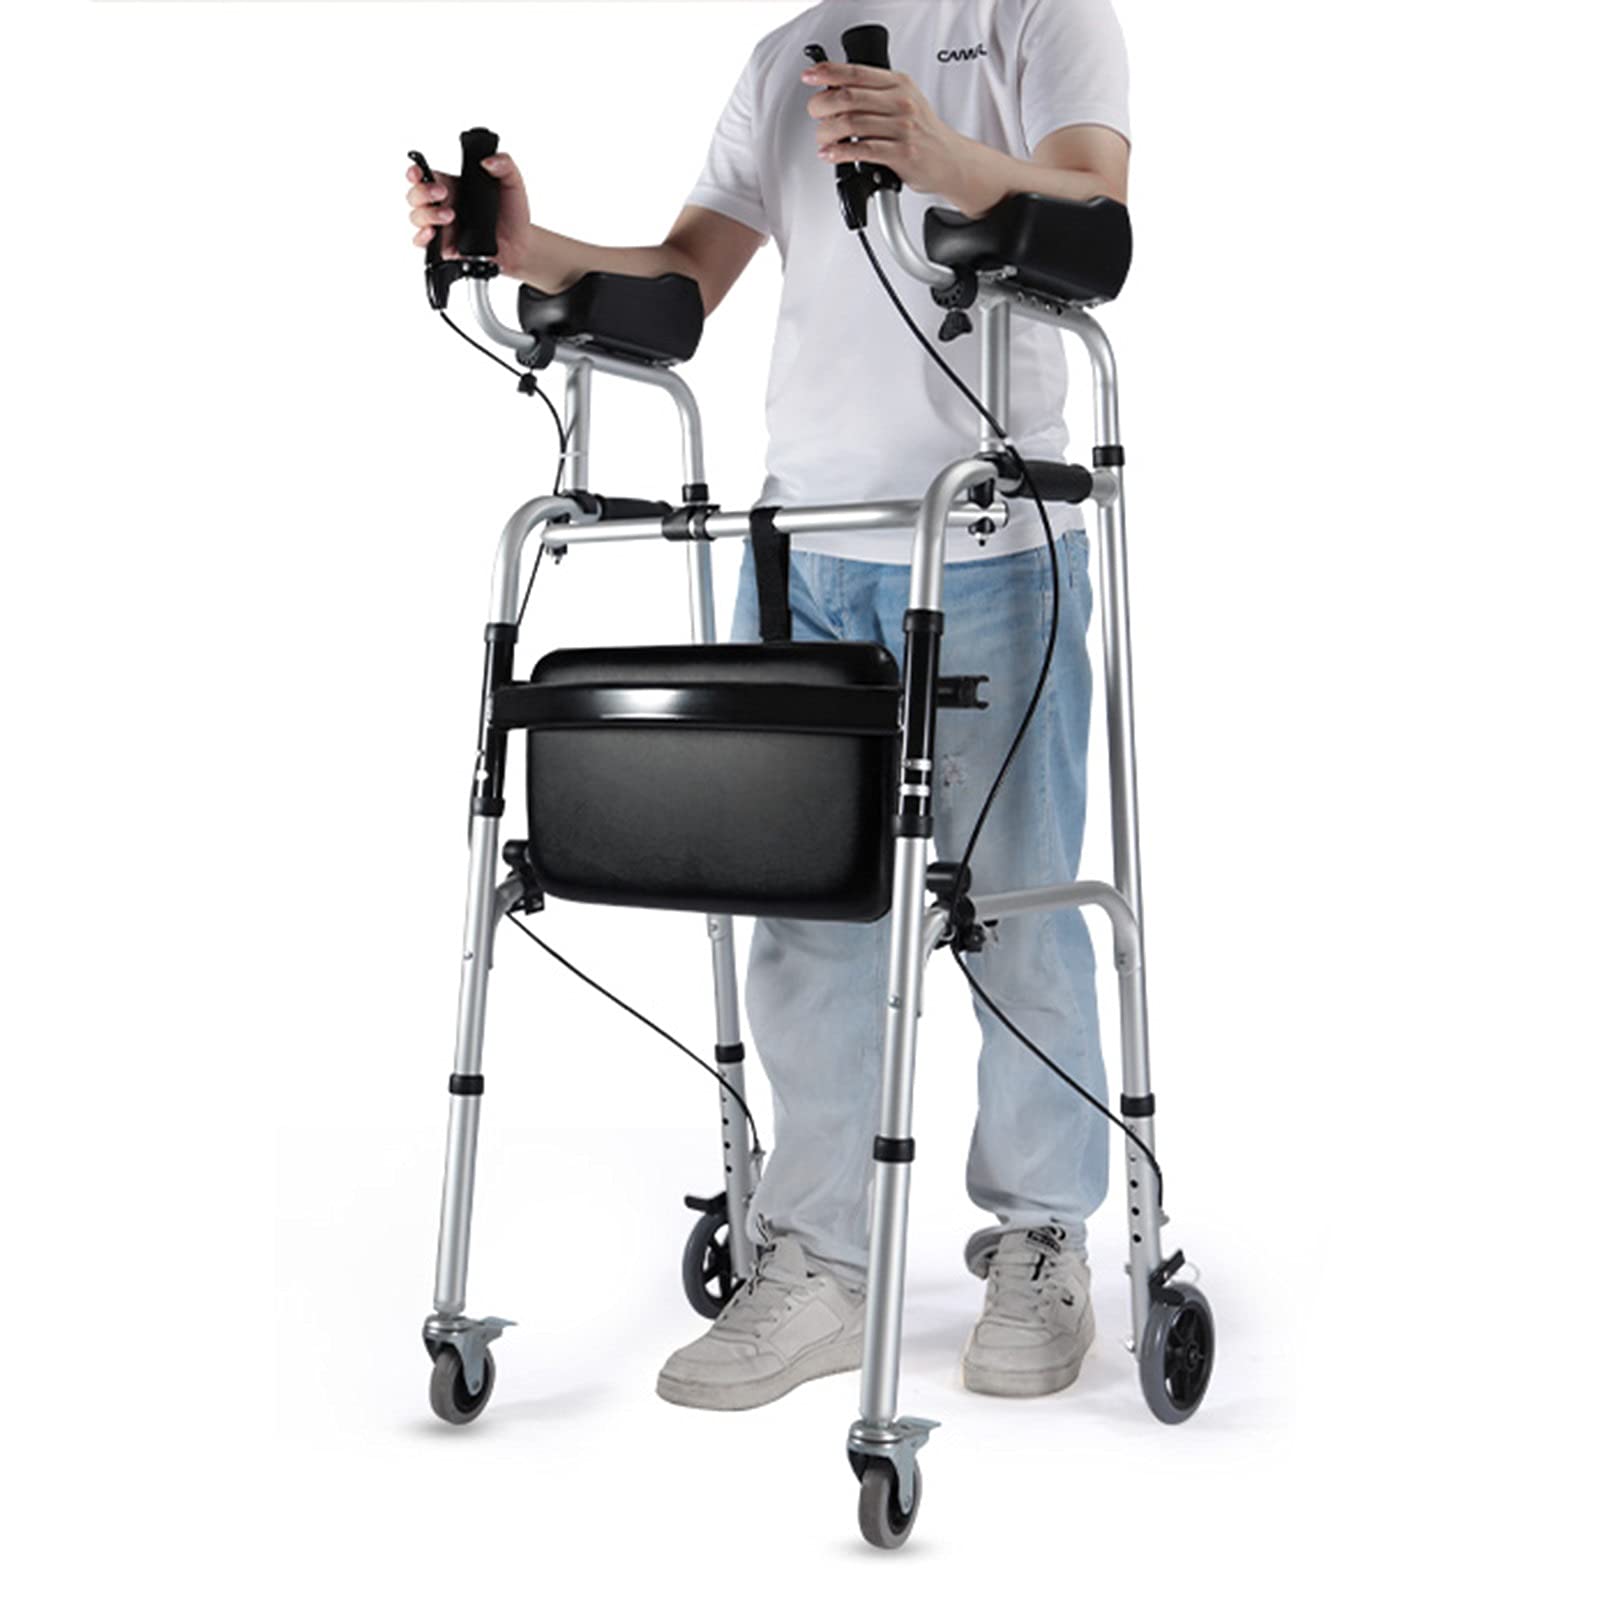 Gehhilfe für Behinderte/ältere Menschen mit Unterarmstütze, Bremsen und Sitz, faltbarer Rollator aus Aluminium/rollbare mobile Gehhilfe, Belastung 150 kg/330 lbs